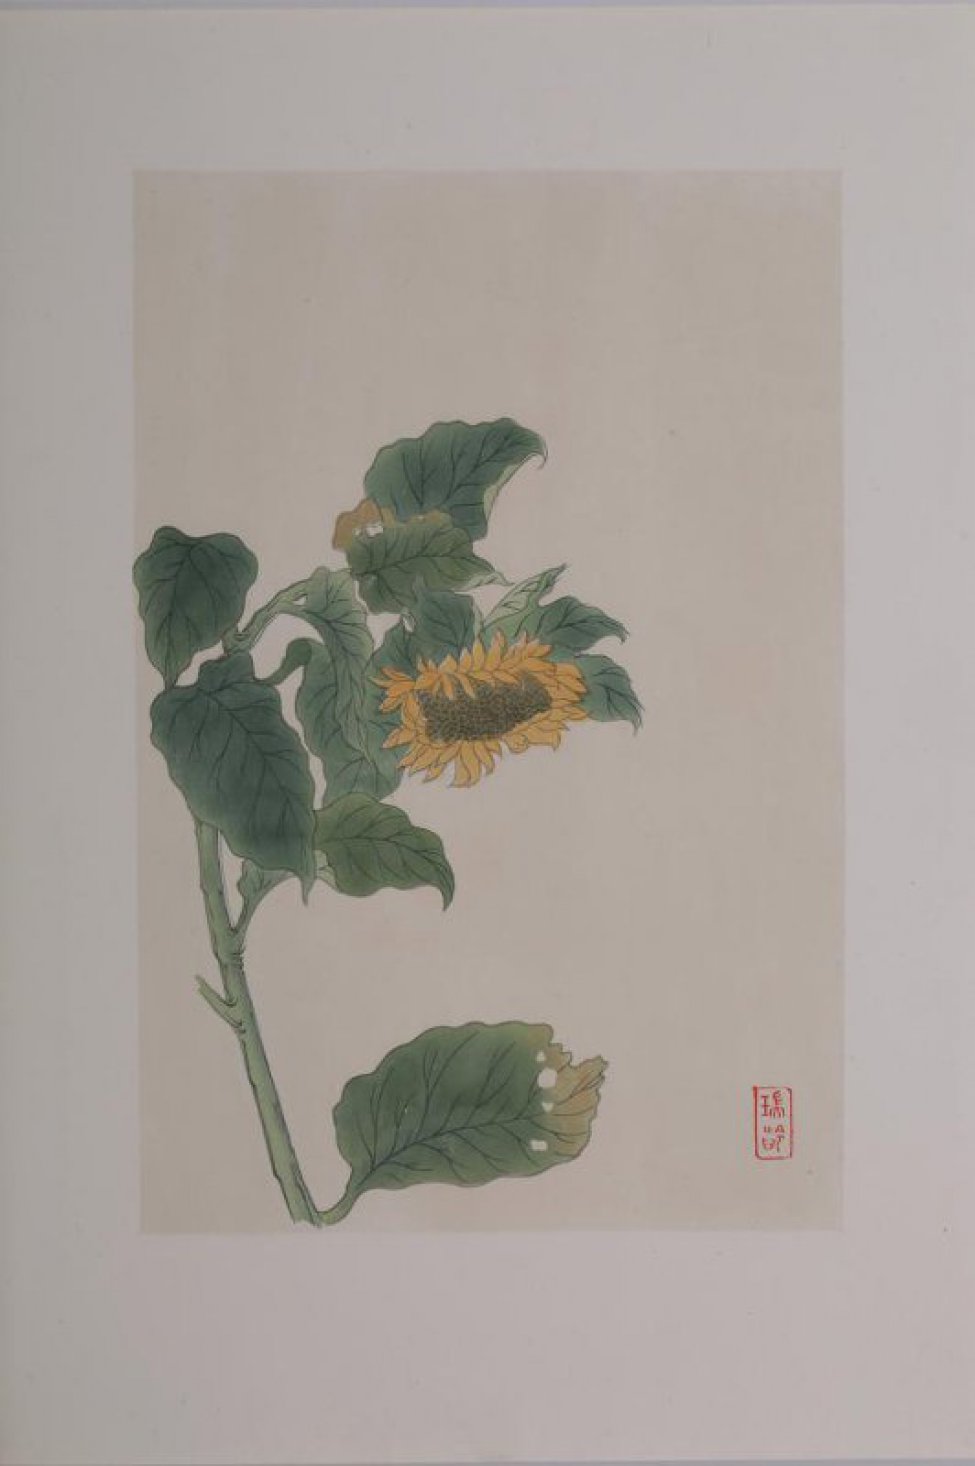 Слева изображен растущий подсолнечник с большой отяжелевшей от семечек опущенной головкой, с желтыми лепестками. Справа внизу 2 иероглифа.